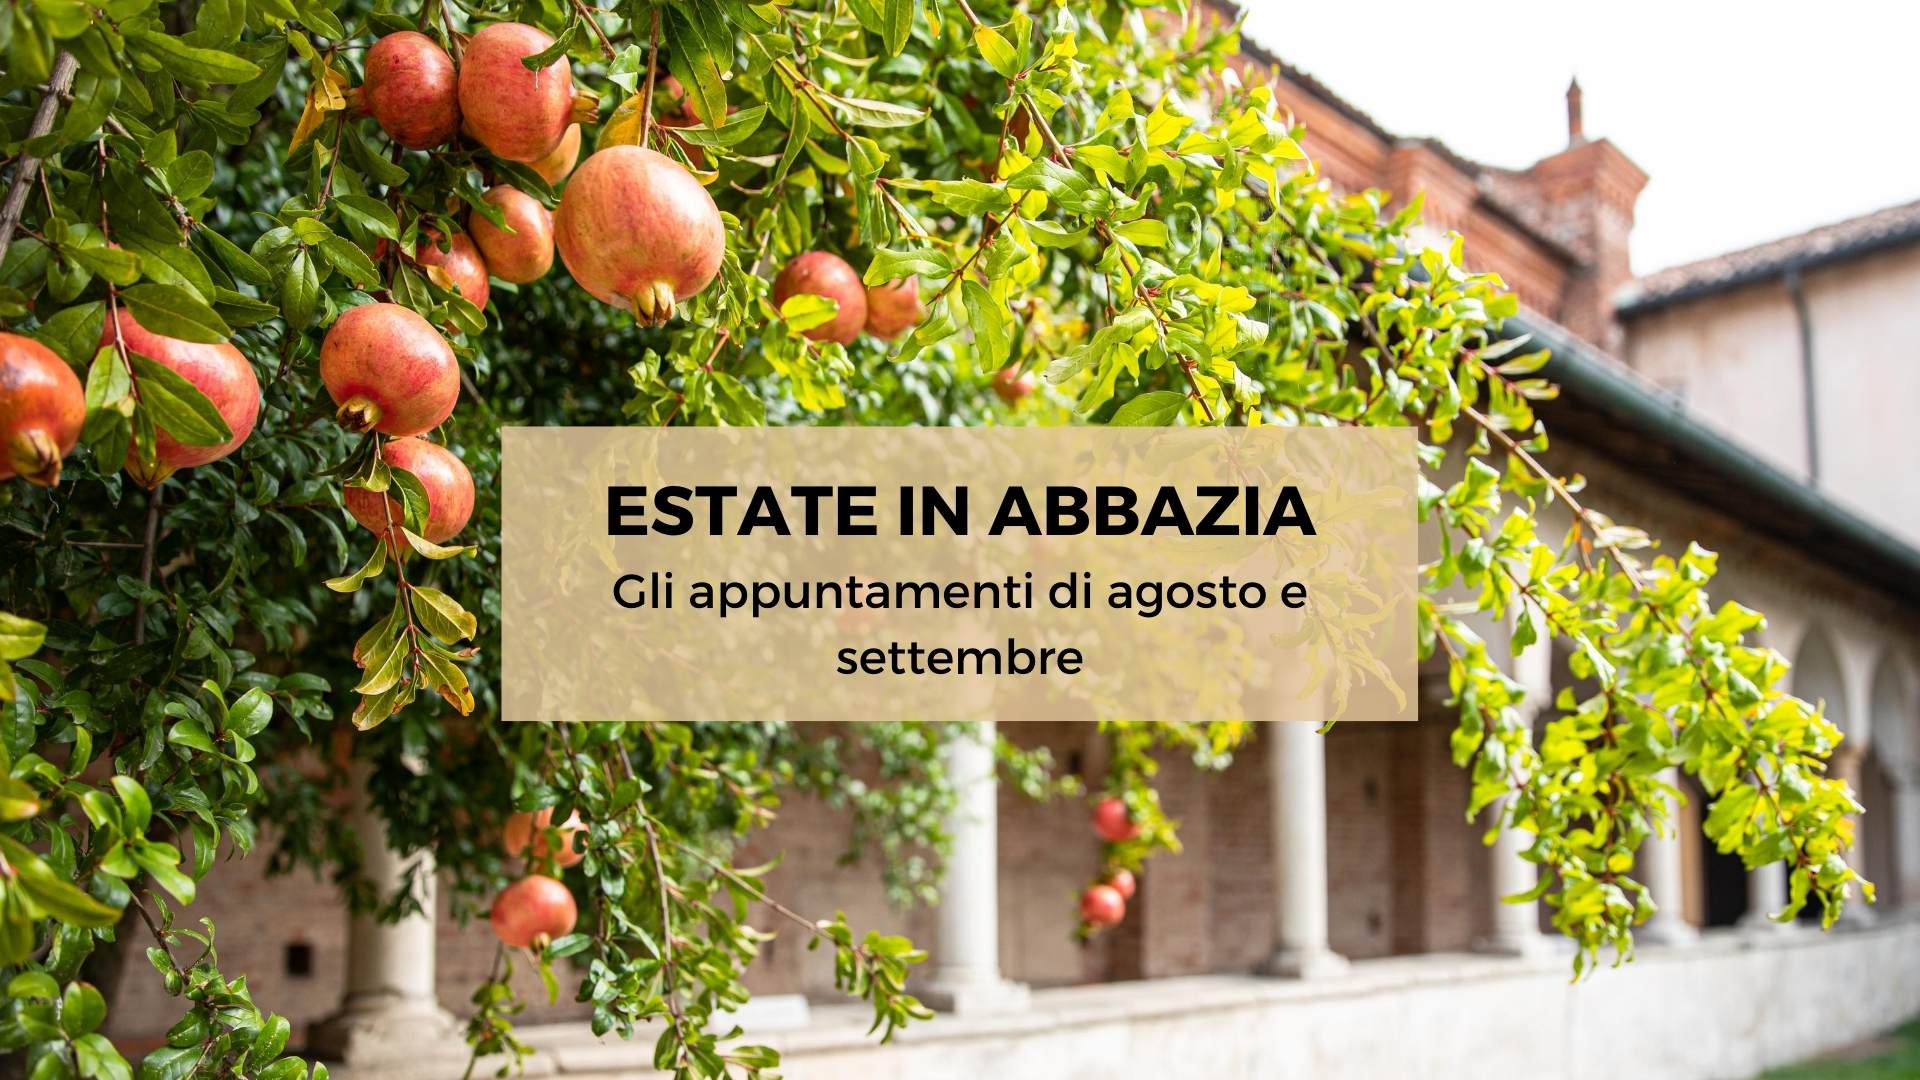 Estate in Abbazia: gli appuntamenti di agosto e settembre